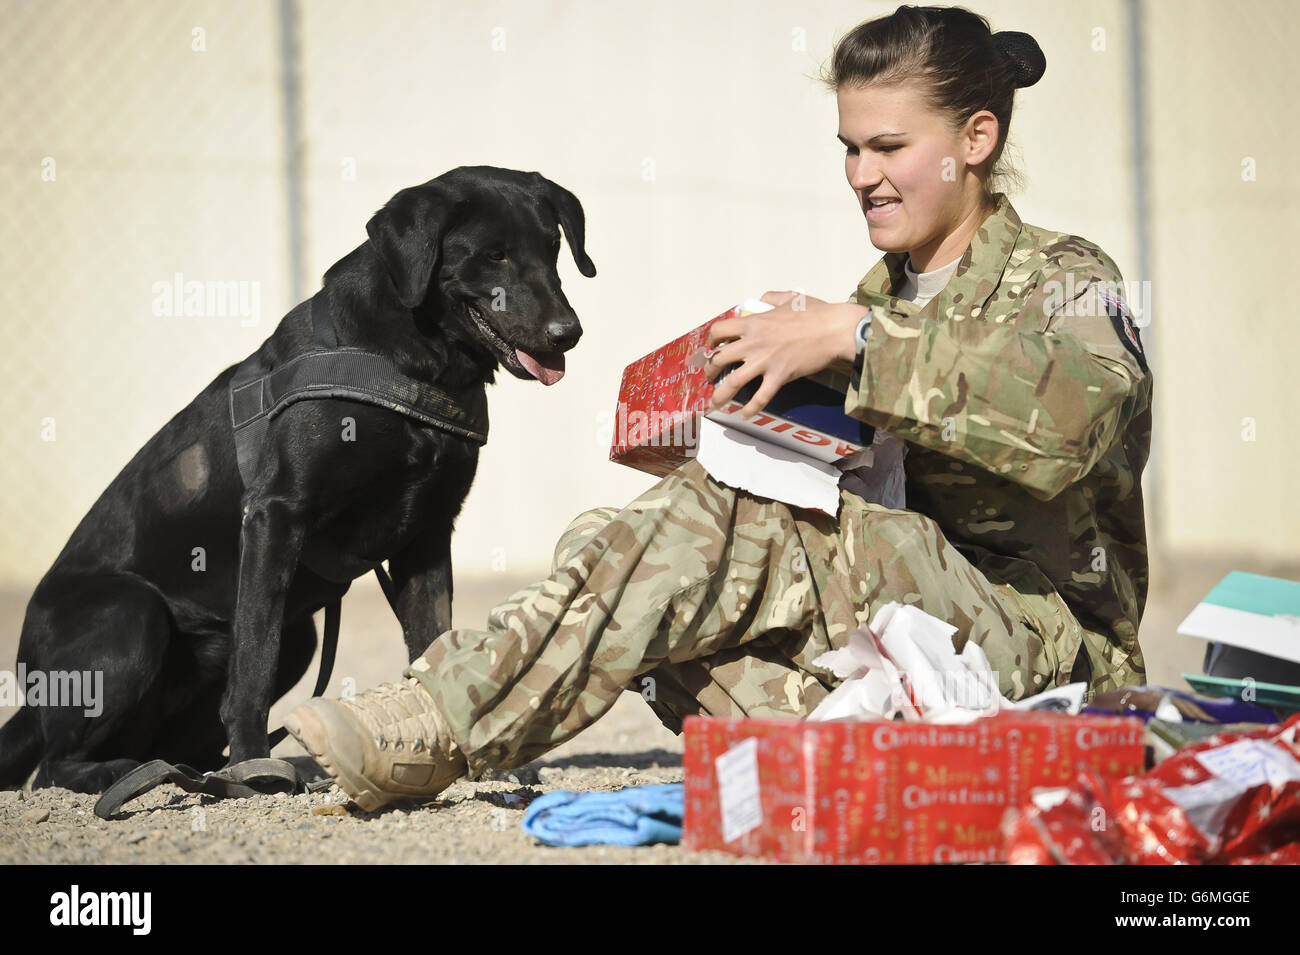 Privat Zina Saunders, eine Hundeführerin mit 1 Military Working Dogs, schenkt Hazel, die als Suchhund arbeitet, Weihnachtsgeschenke, die von den Freunden und der Familie des Hundeführers in Großbritannien geschickt wurden. Stockfoto